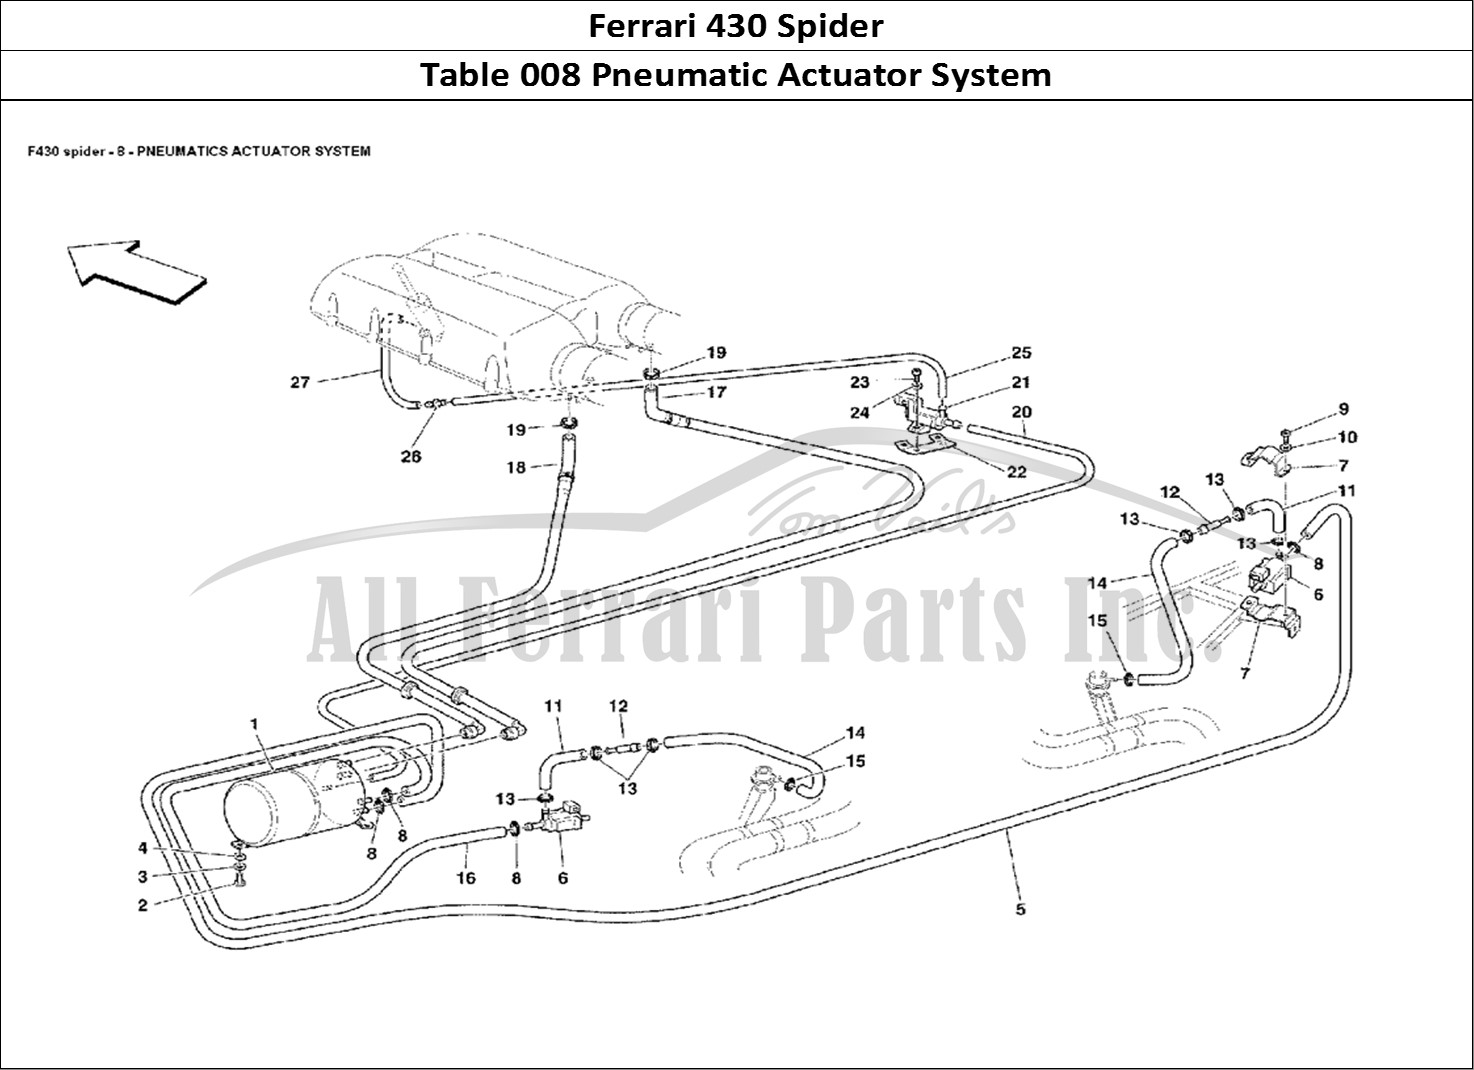 Ferrari Parts Ferrari 430 Spider Page 008 Pneumatics Actuator Syste